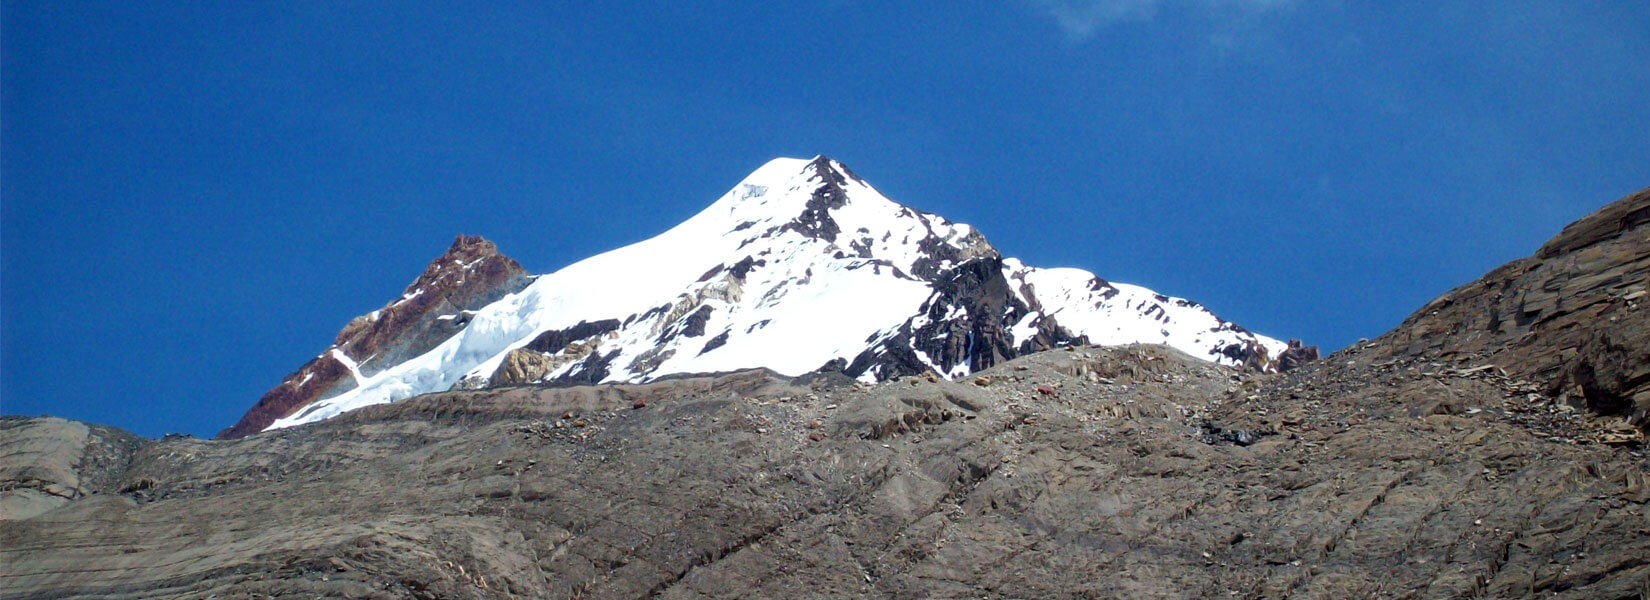 Chulu West Peak Climbing in Nepal